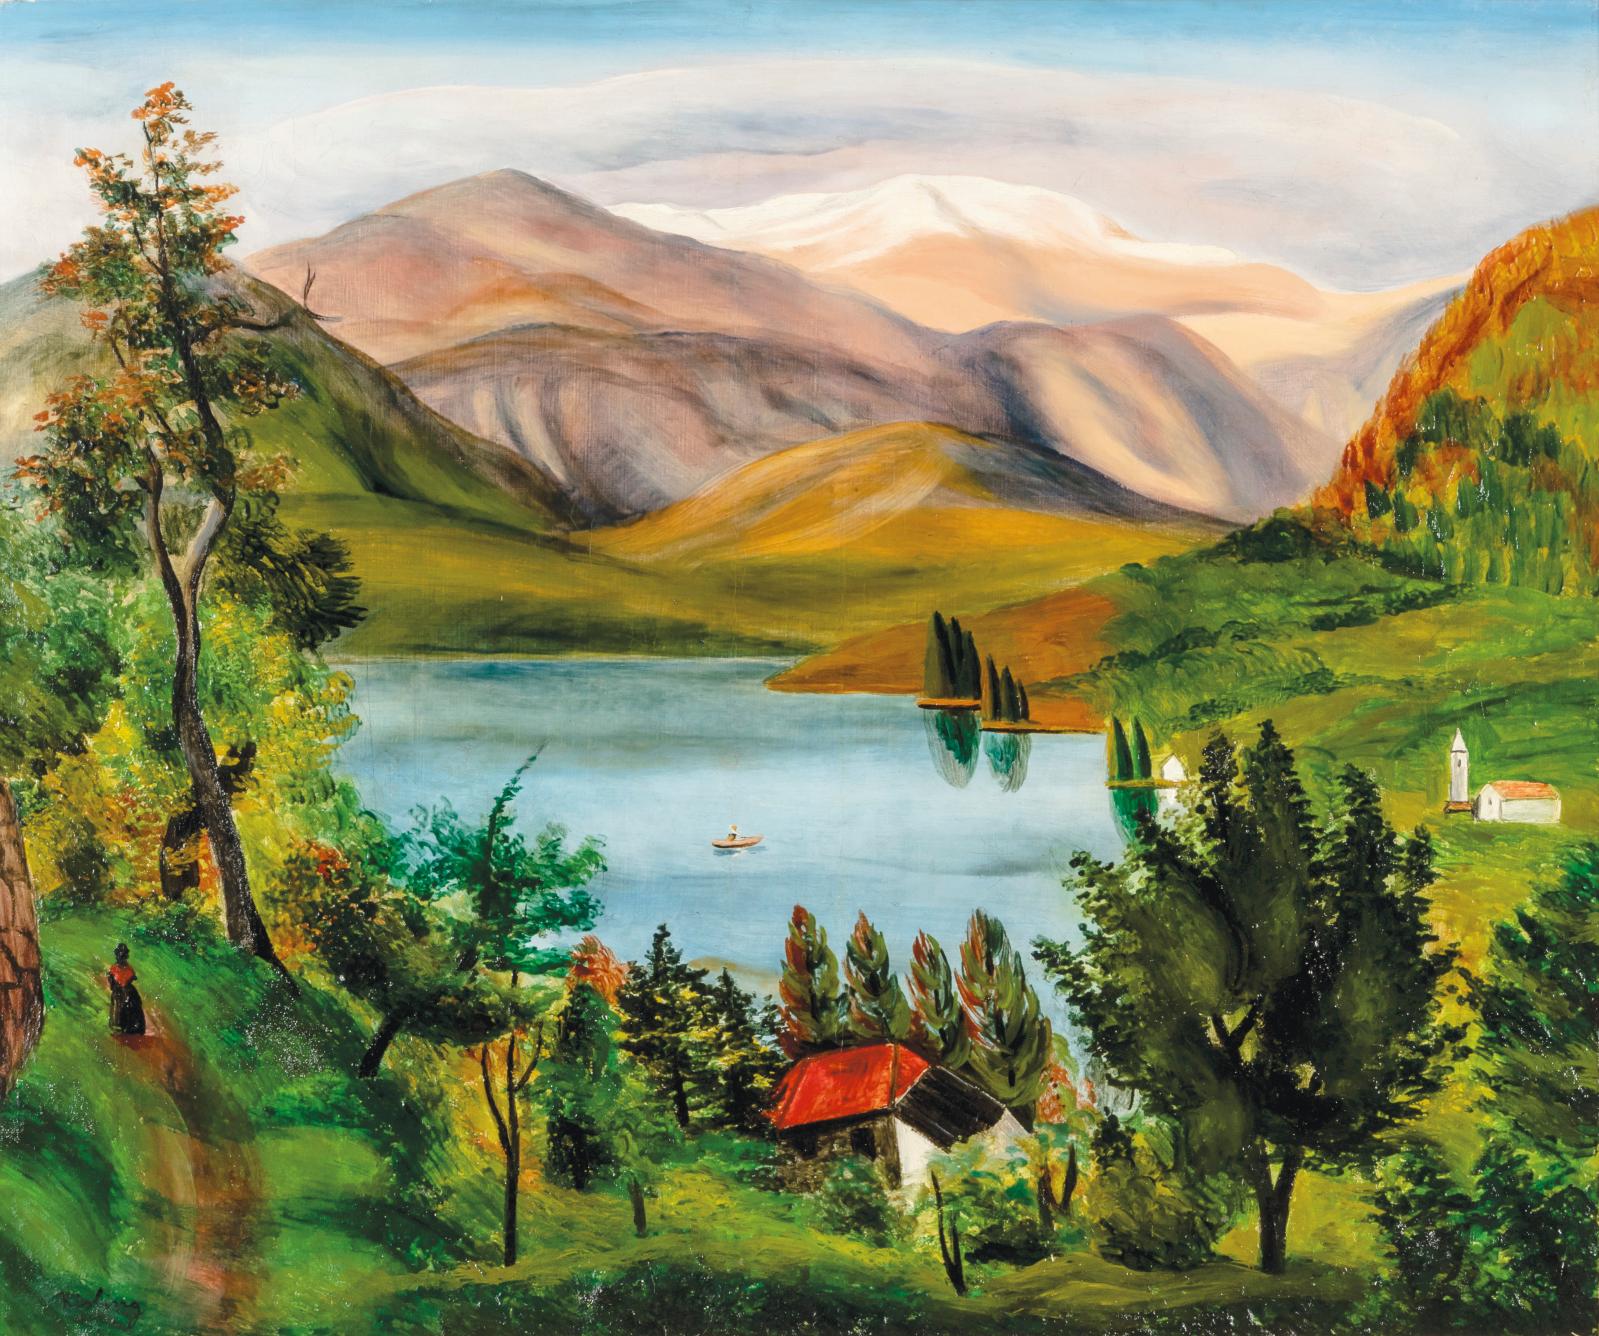 Le paysage décliné par Kisling, Guillaumin et Chabaud